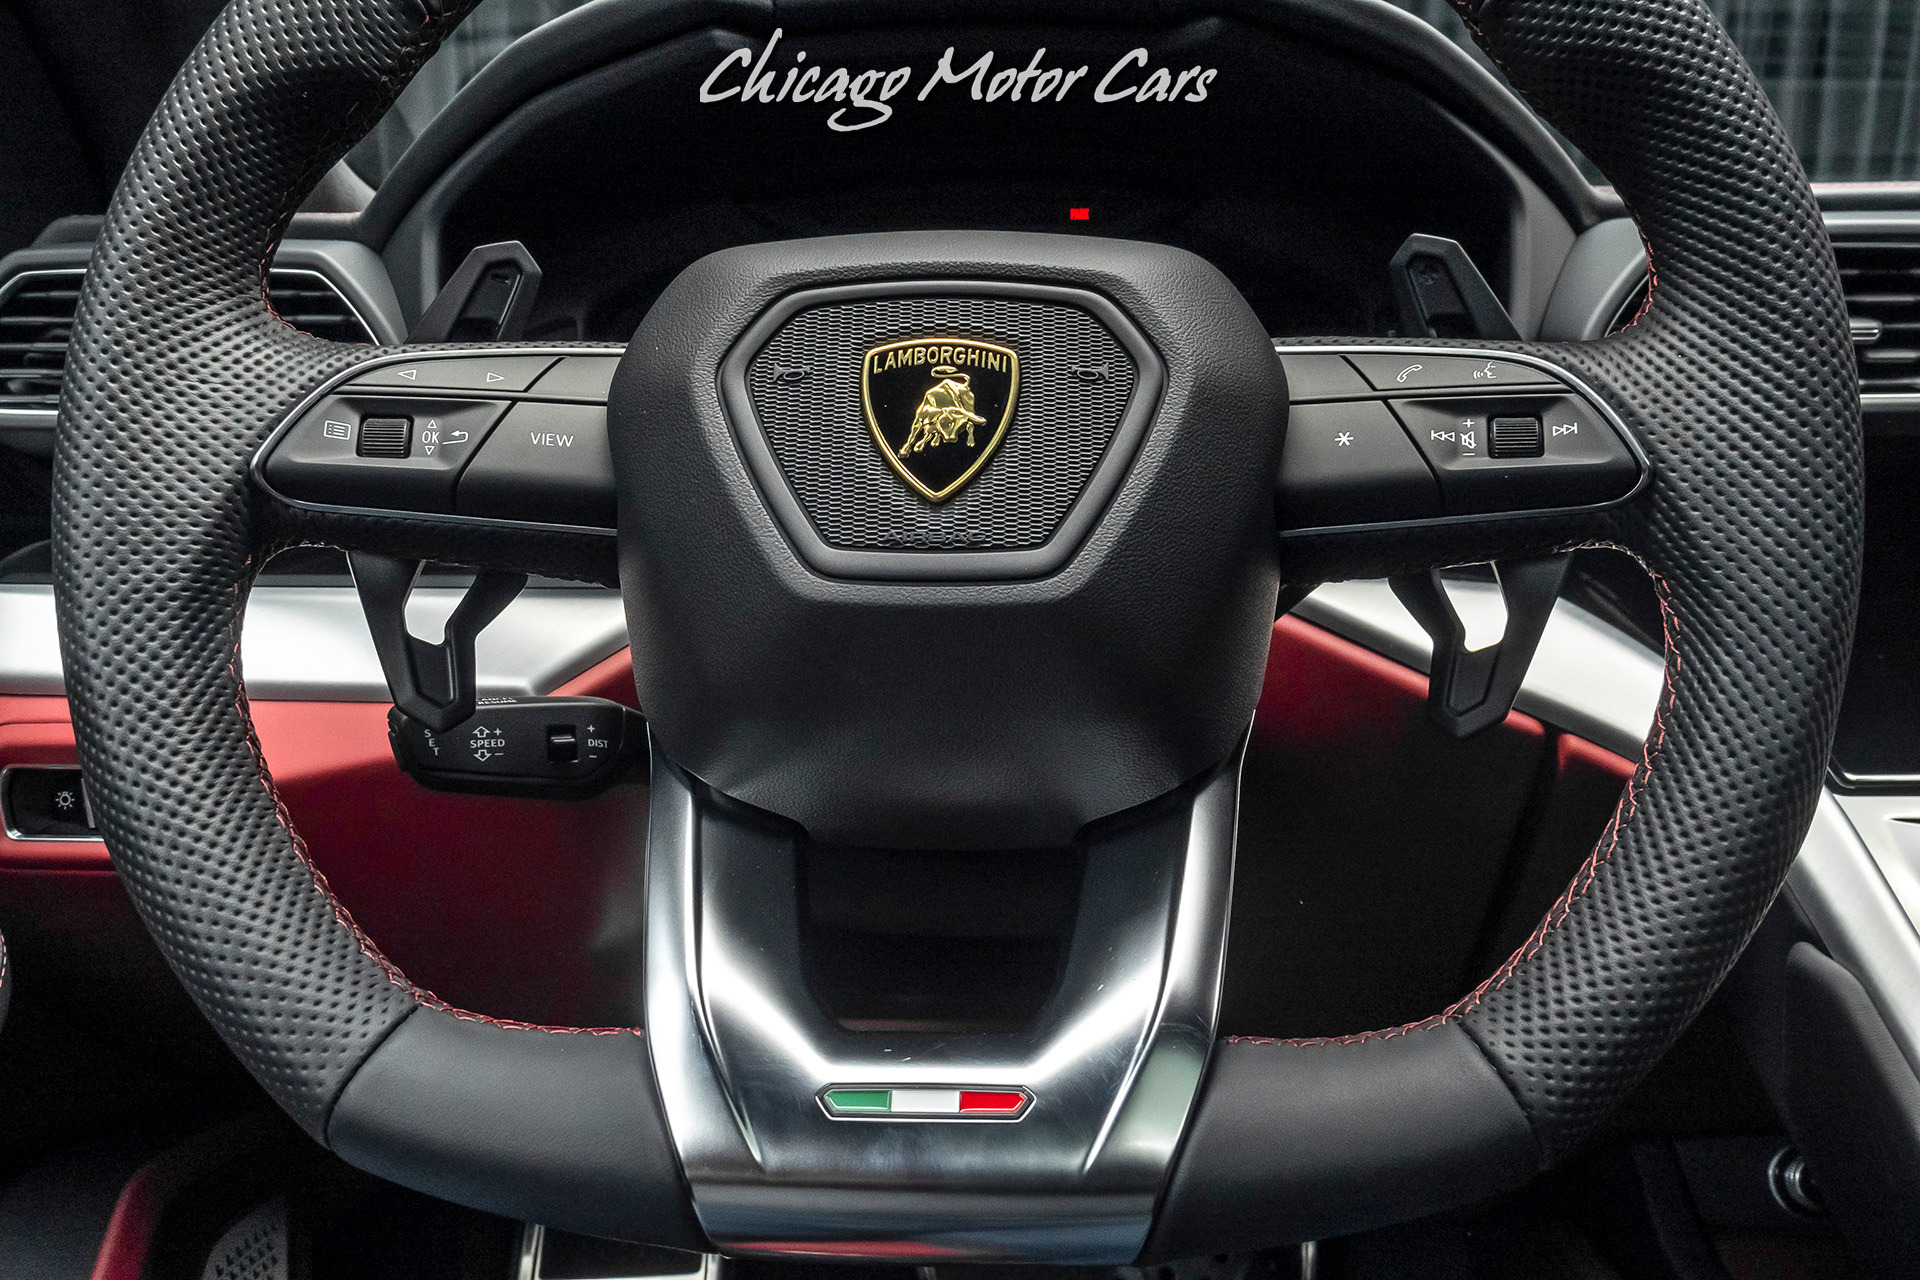 For sale : 2020 Lamborghini Urus - Chicago Motor Cars ...